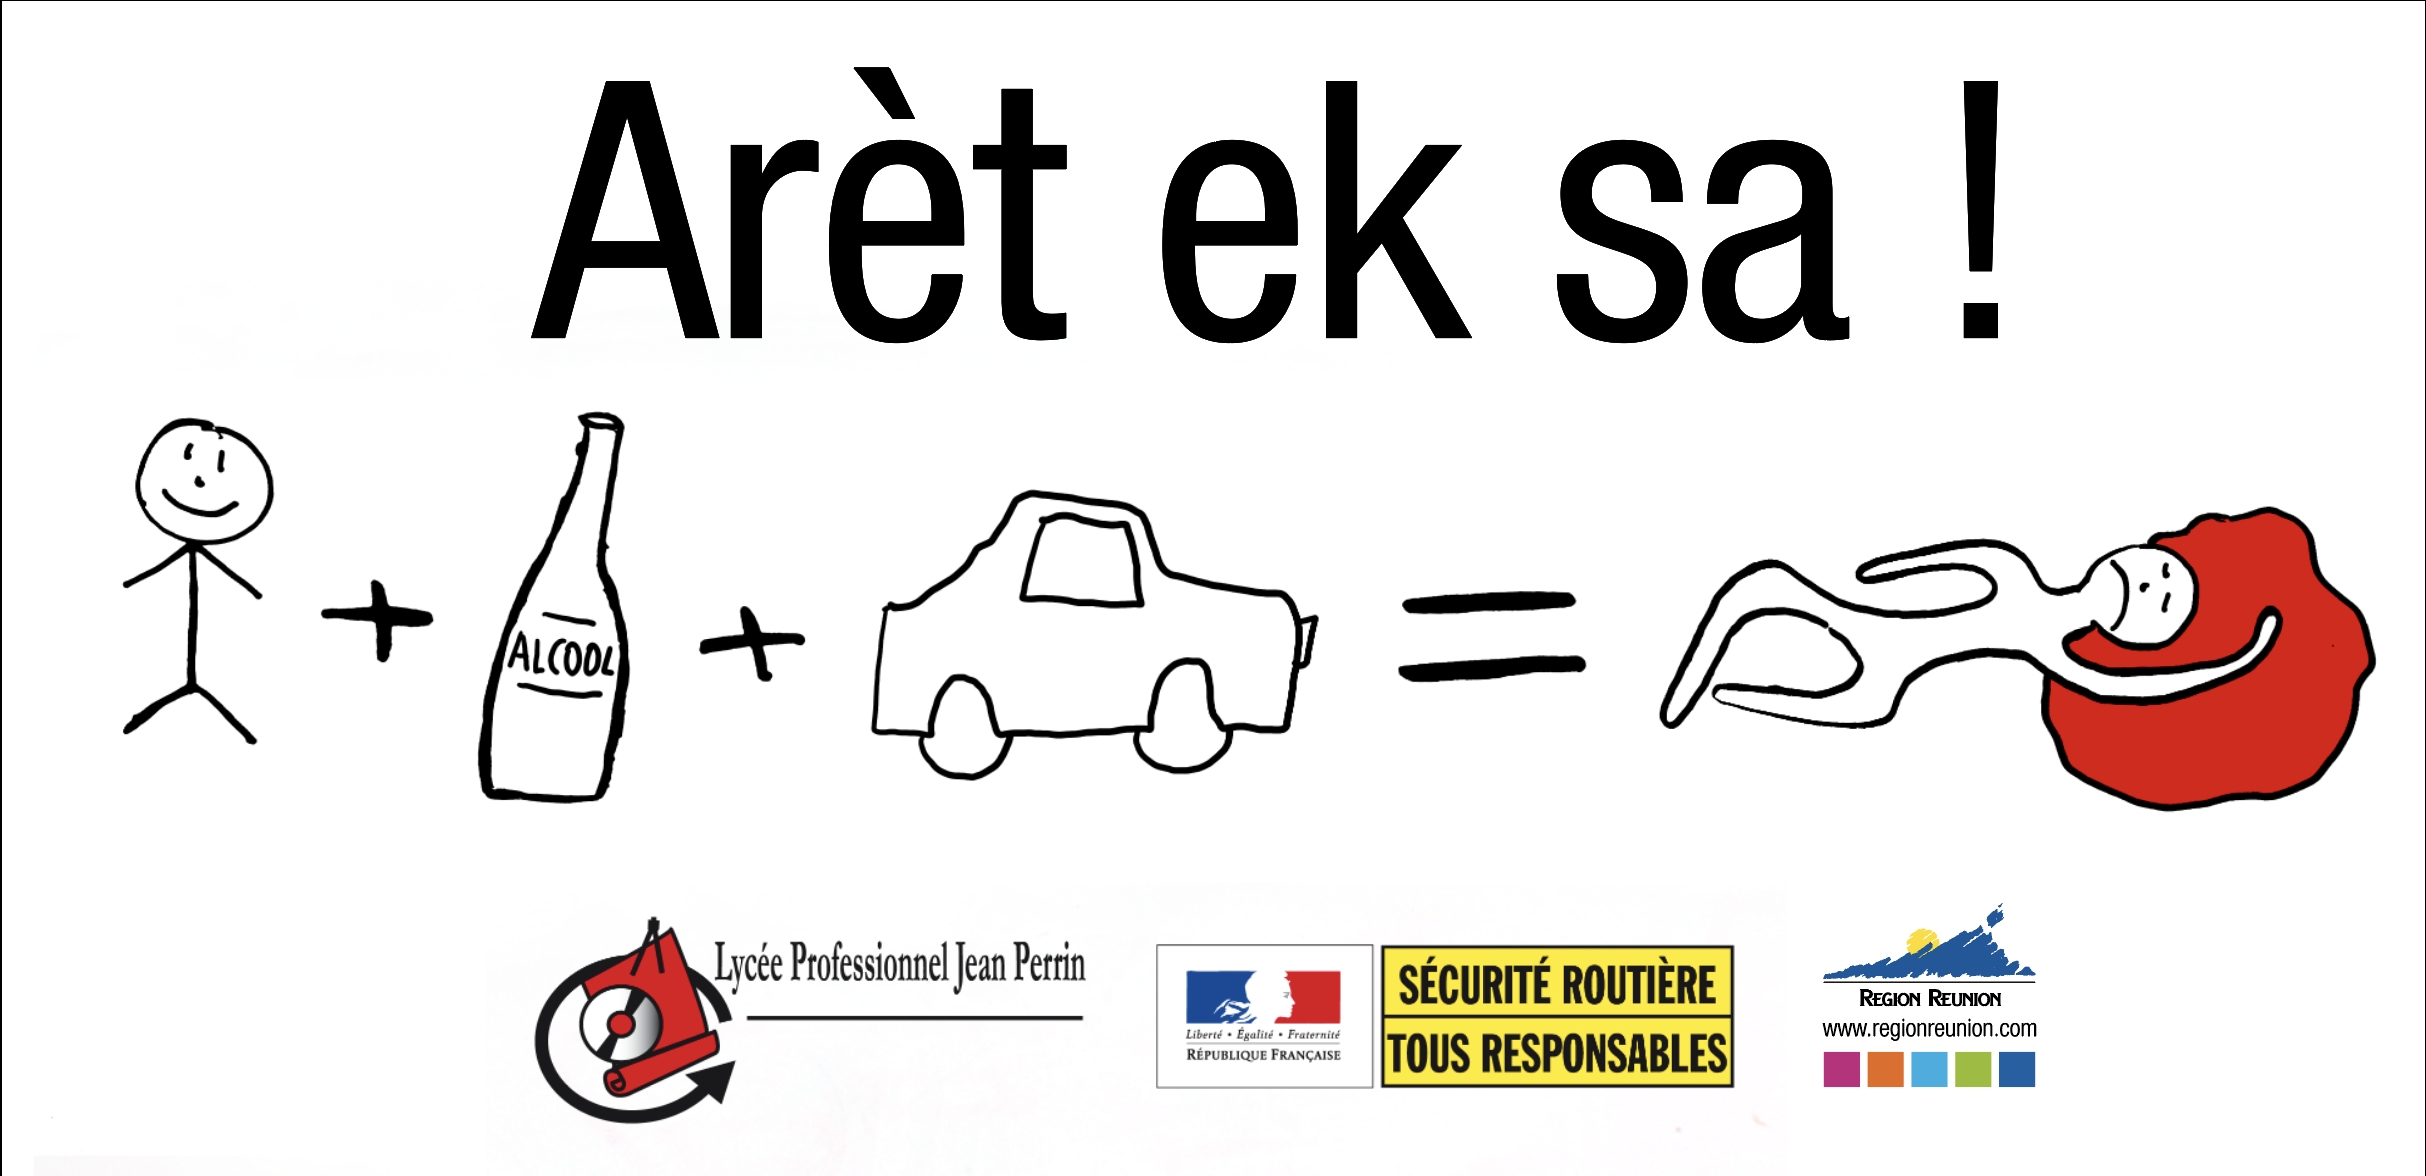 "Aret ek sa", la nouvelle campagne de sensibilisation sur les dangers de l'alcool au volant